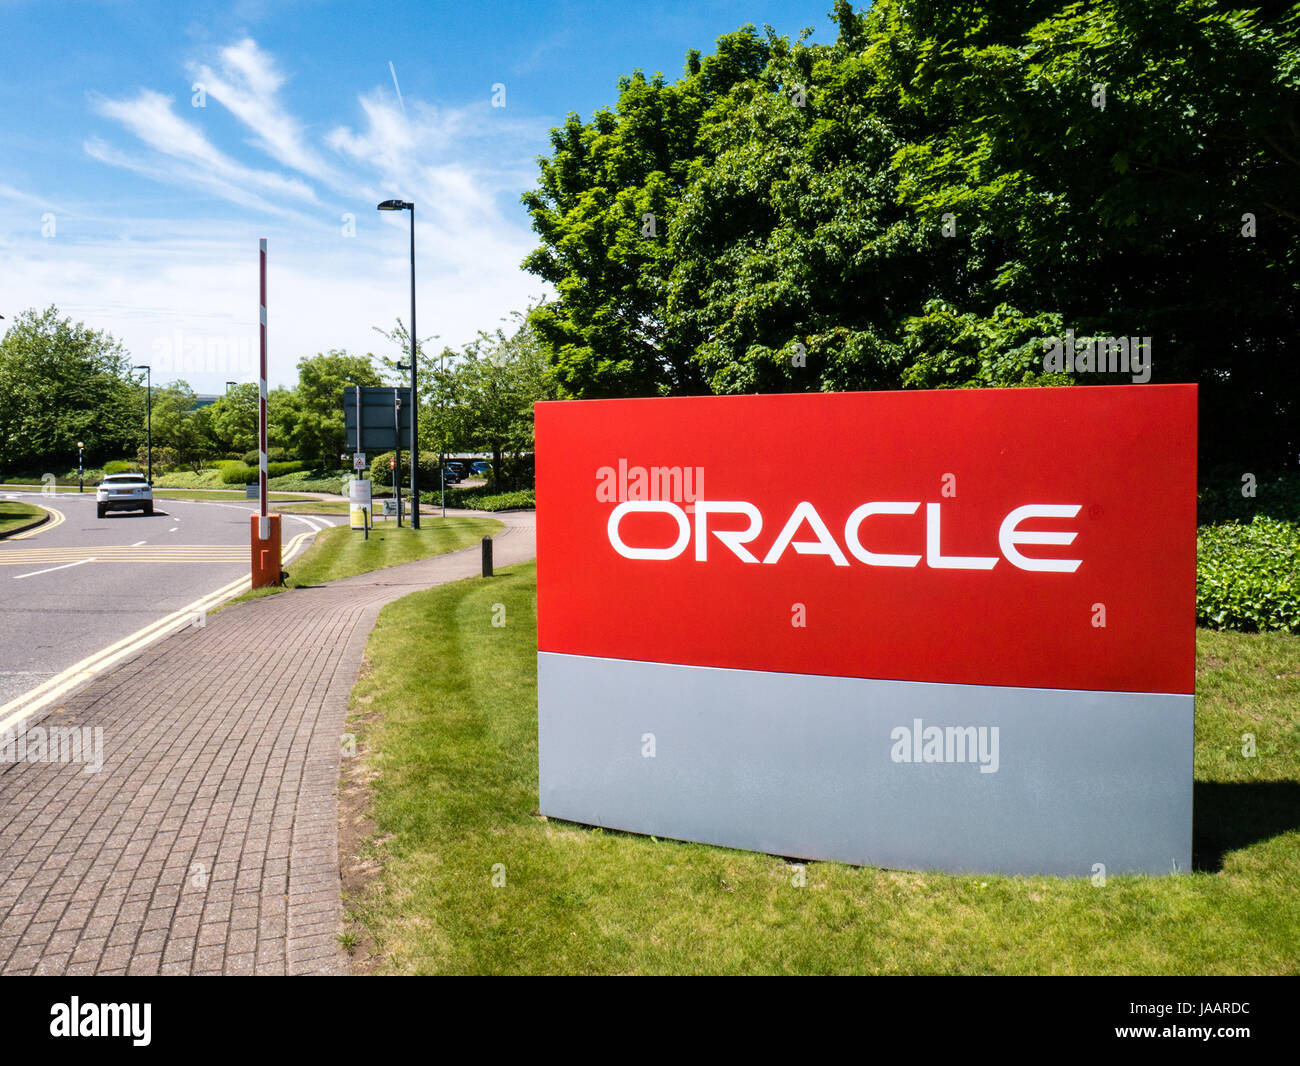 Inscrivez-Oracle, à l'extérieur du siège social au Royaume-Uni, Reading, Berkshire, Angleterre, RU, FR. Banque D'Images